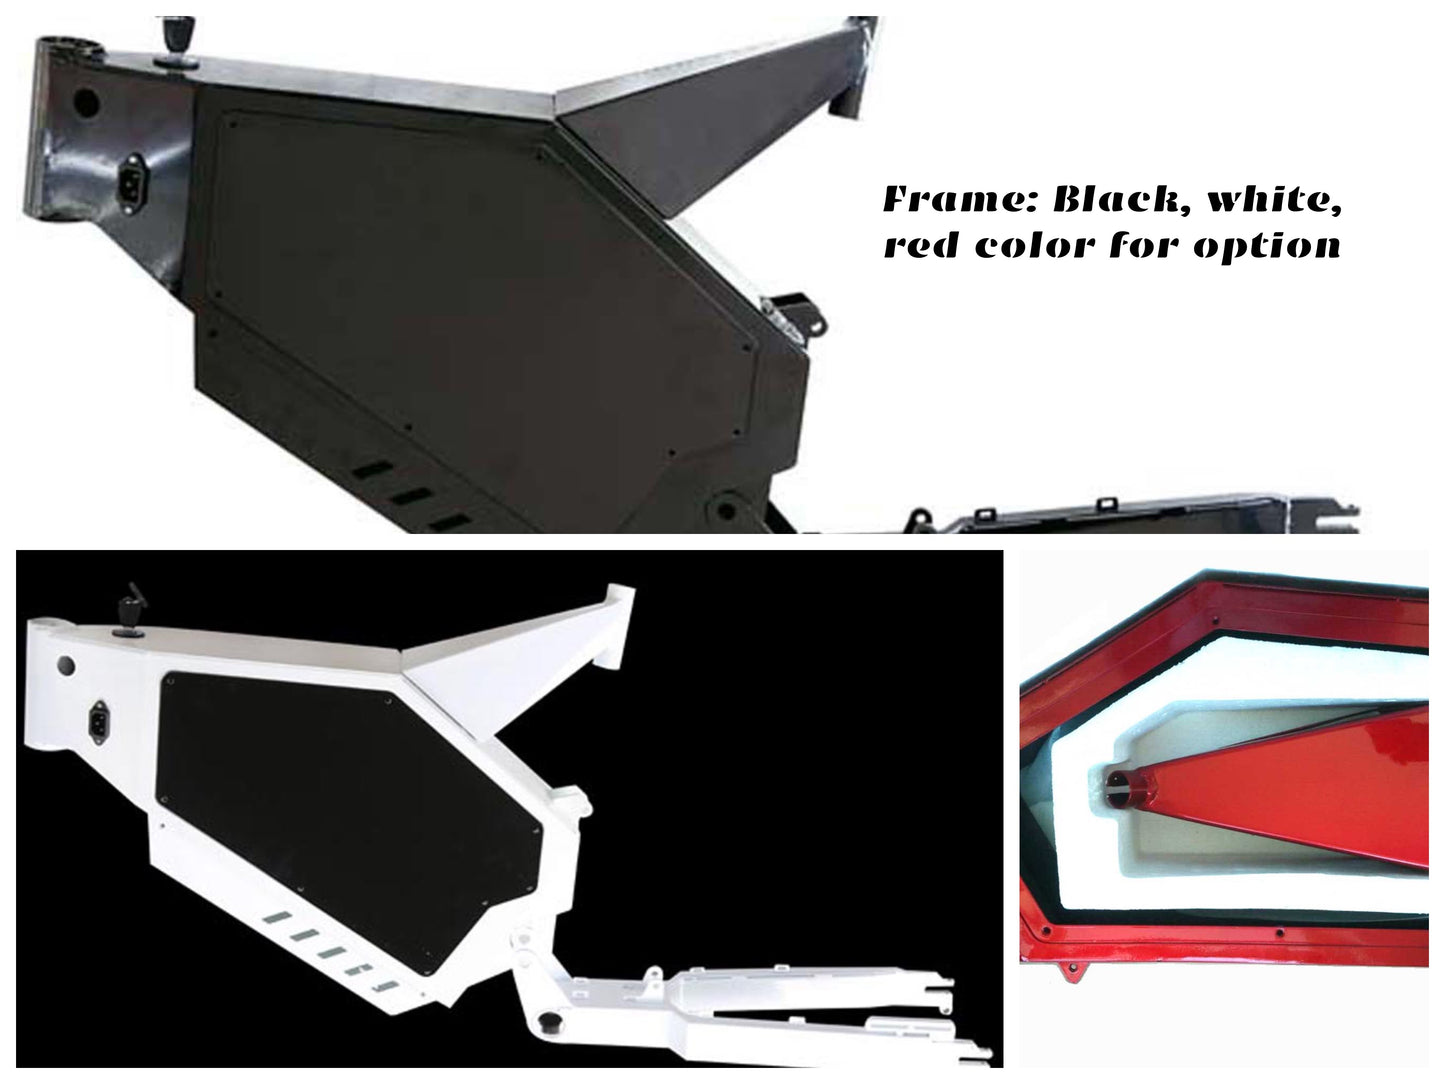 stealth bomber frame black white red